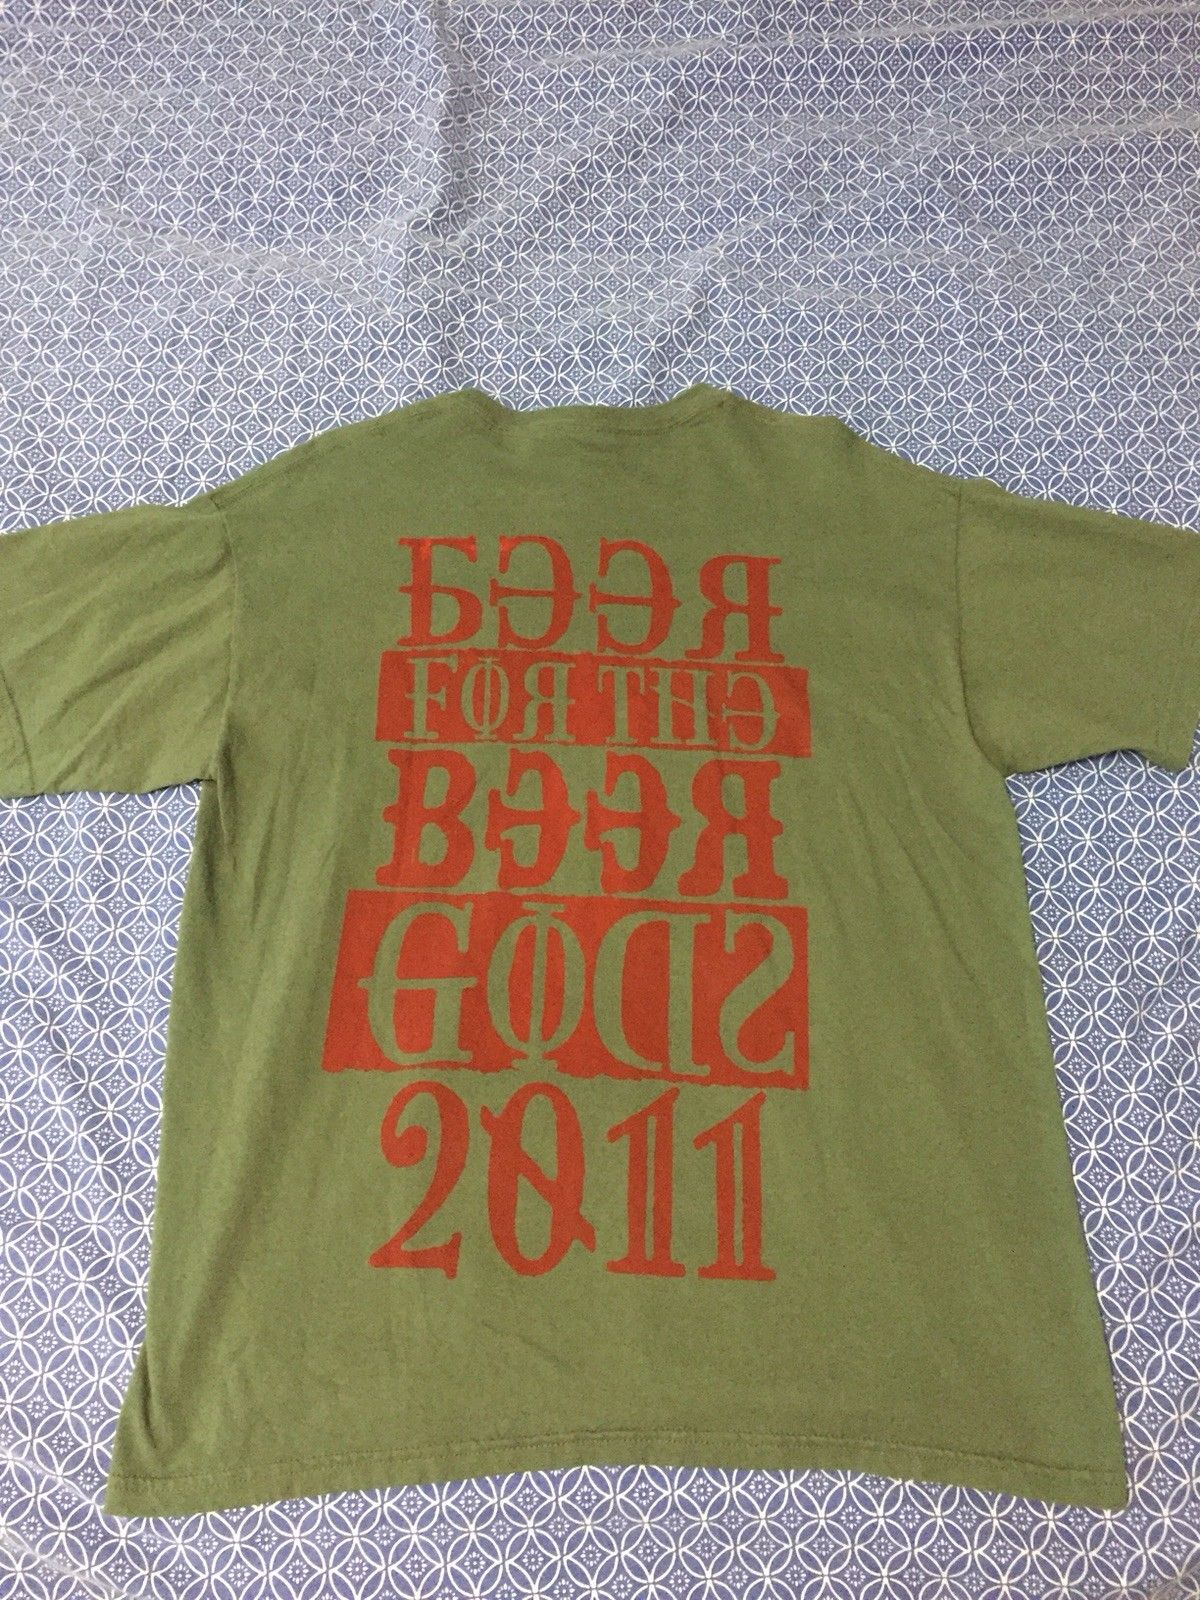 2011 tshirt b.jpg